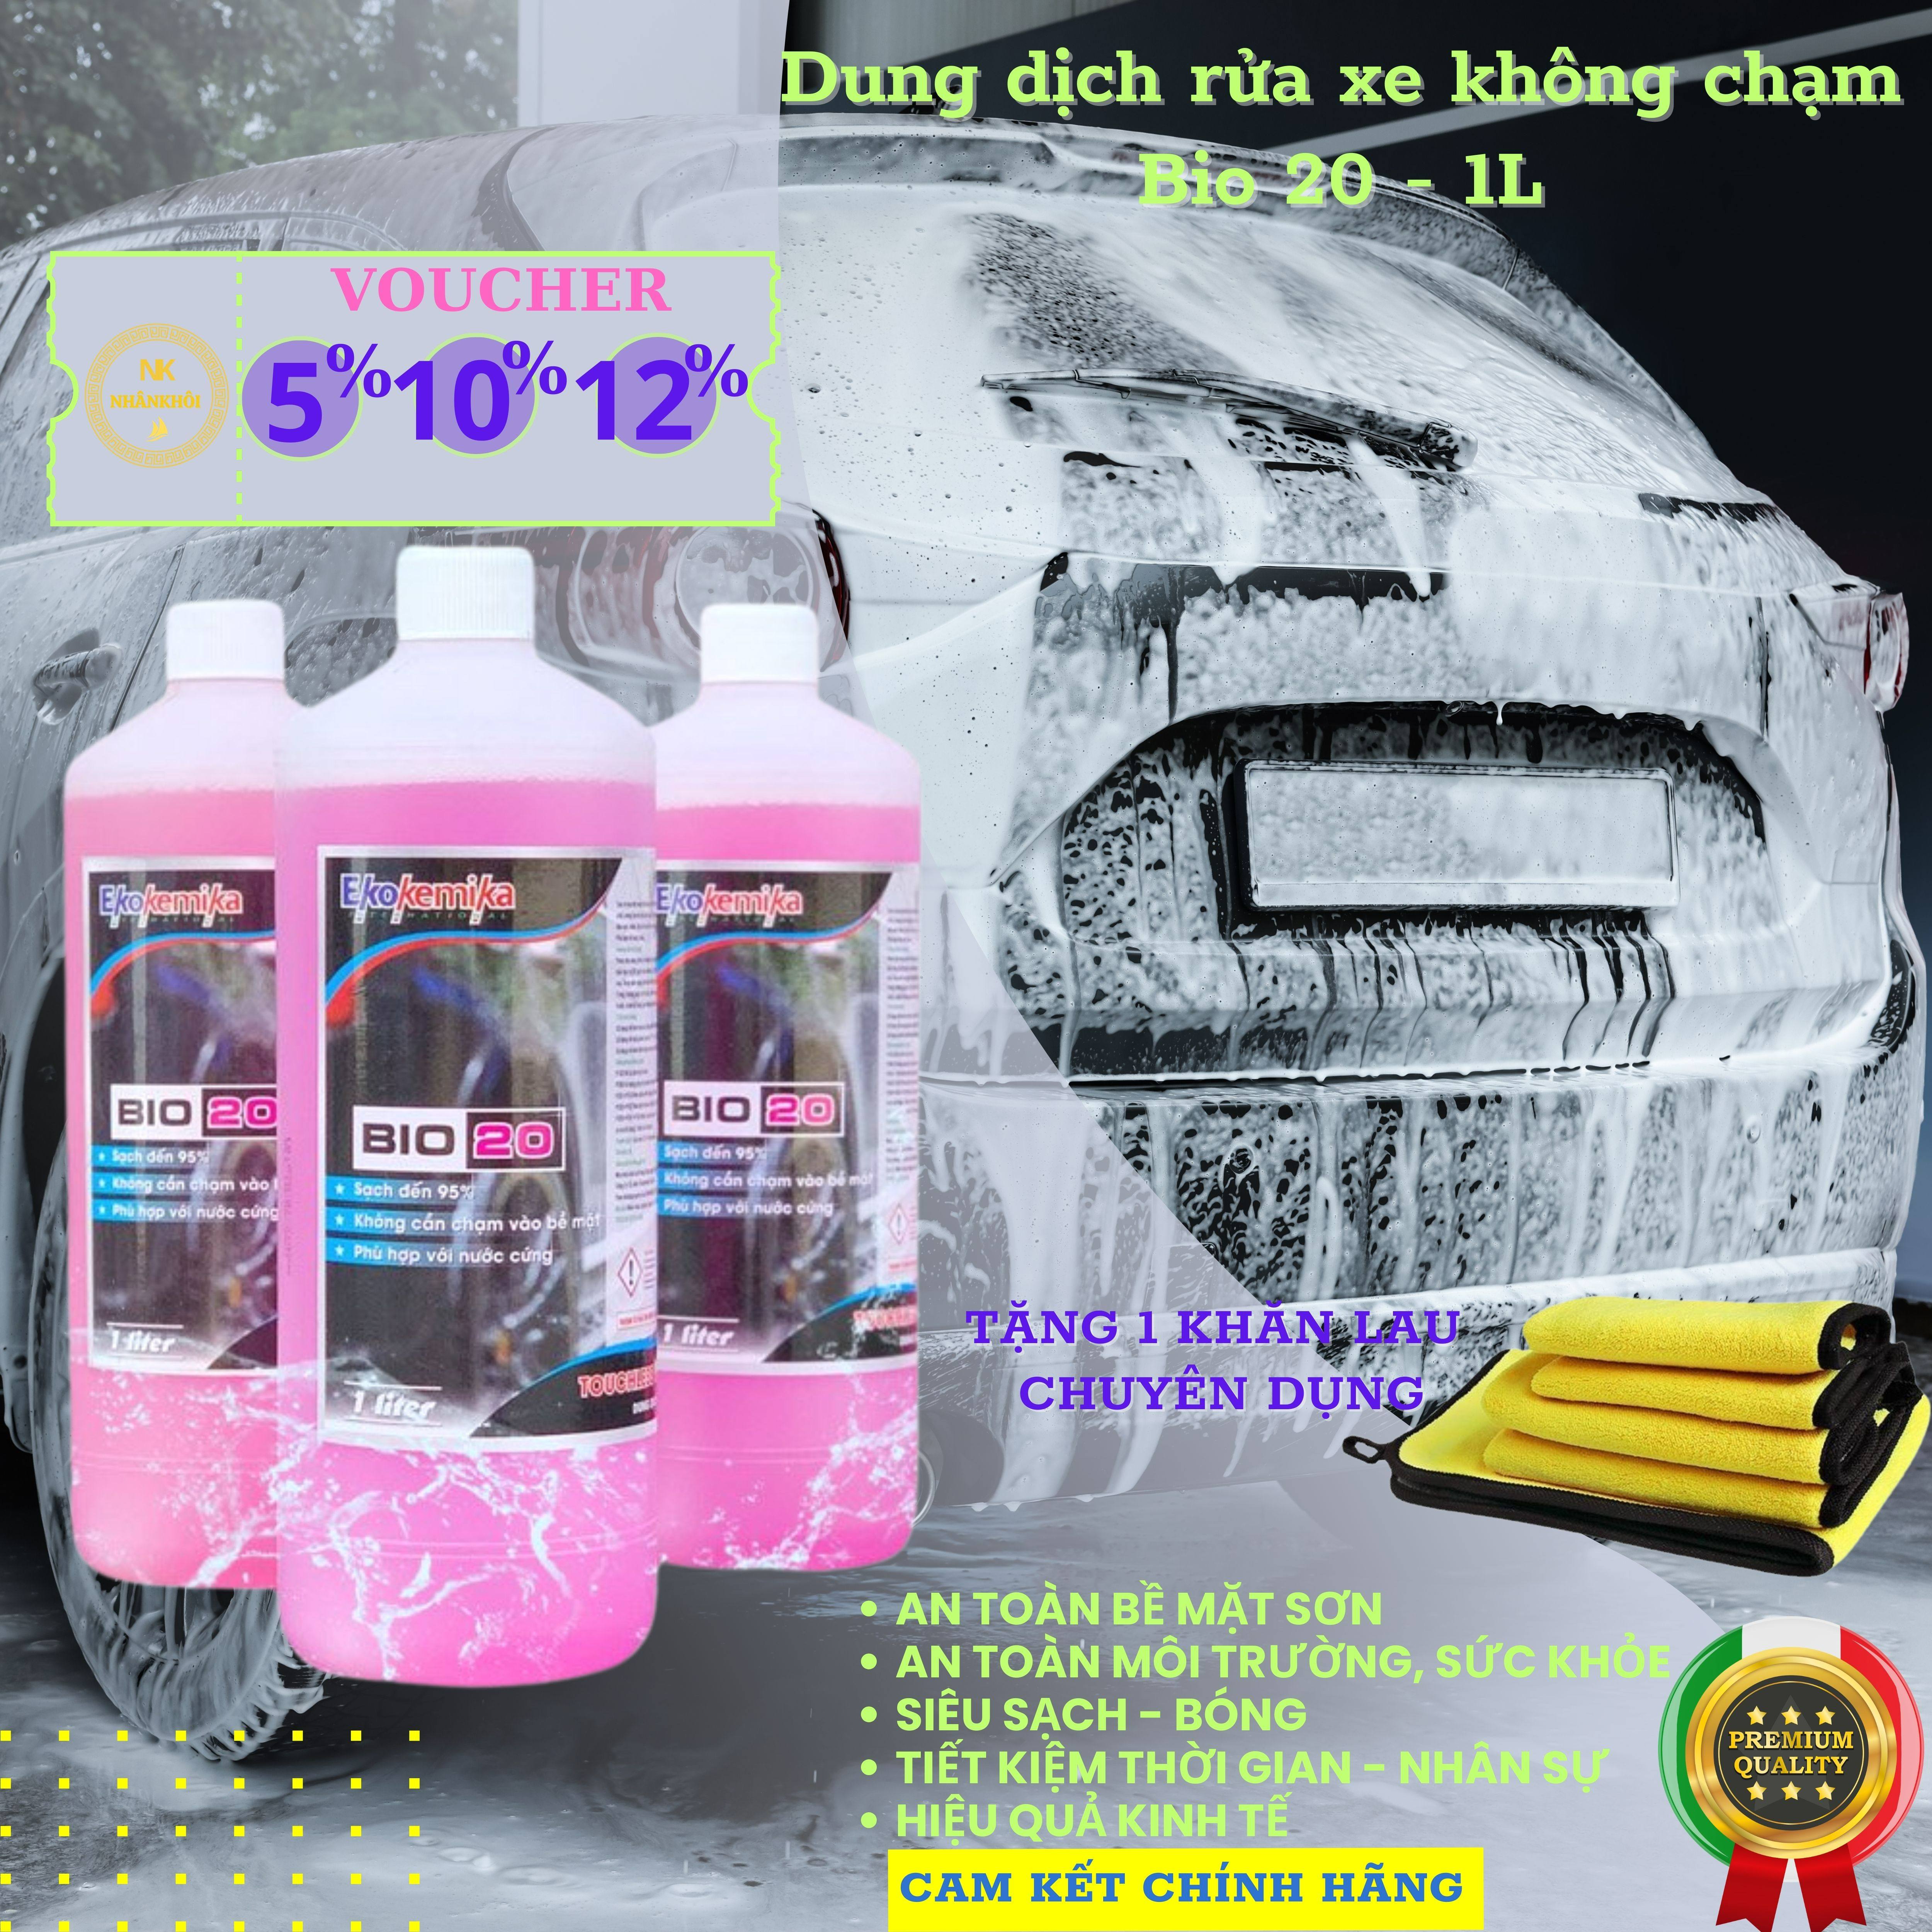 Bio 20 - 1 lít - Dung dịch rửa xe không chạm - Nước rửa xe bọt tuyết - Ekokemika